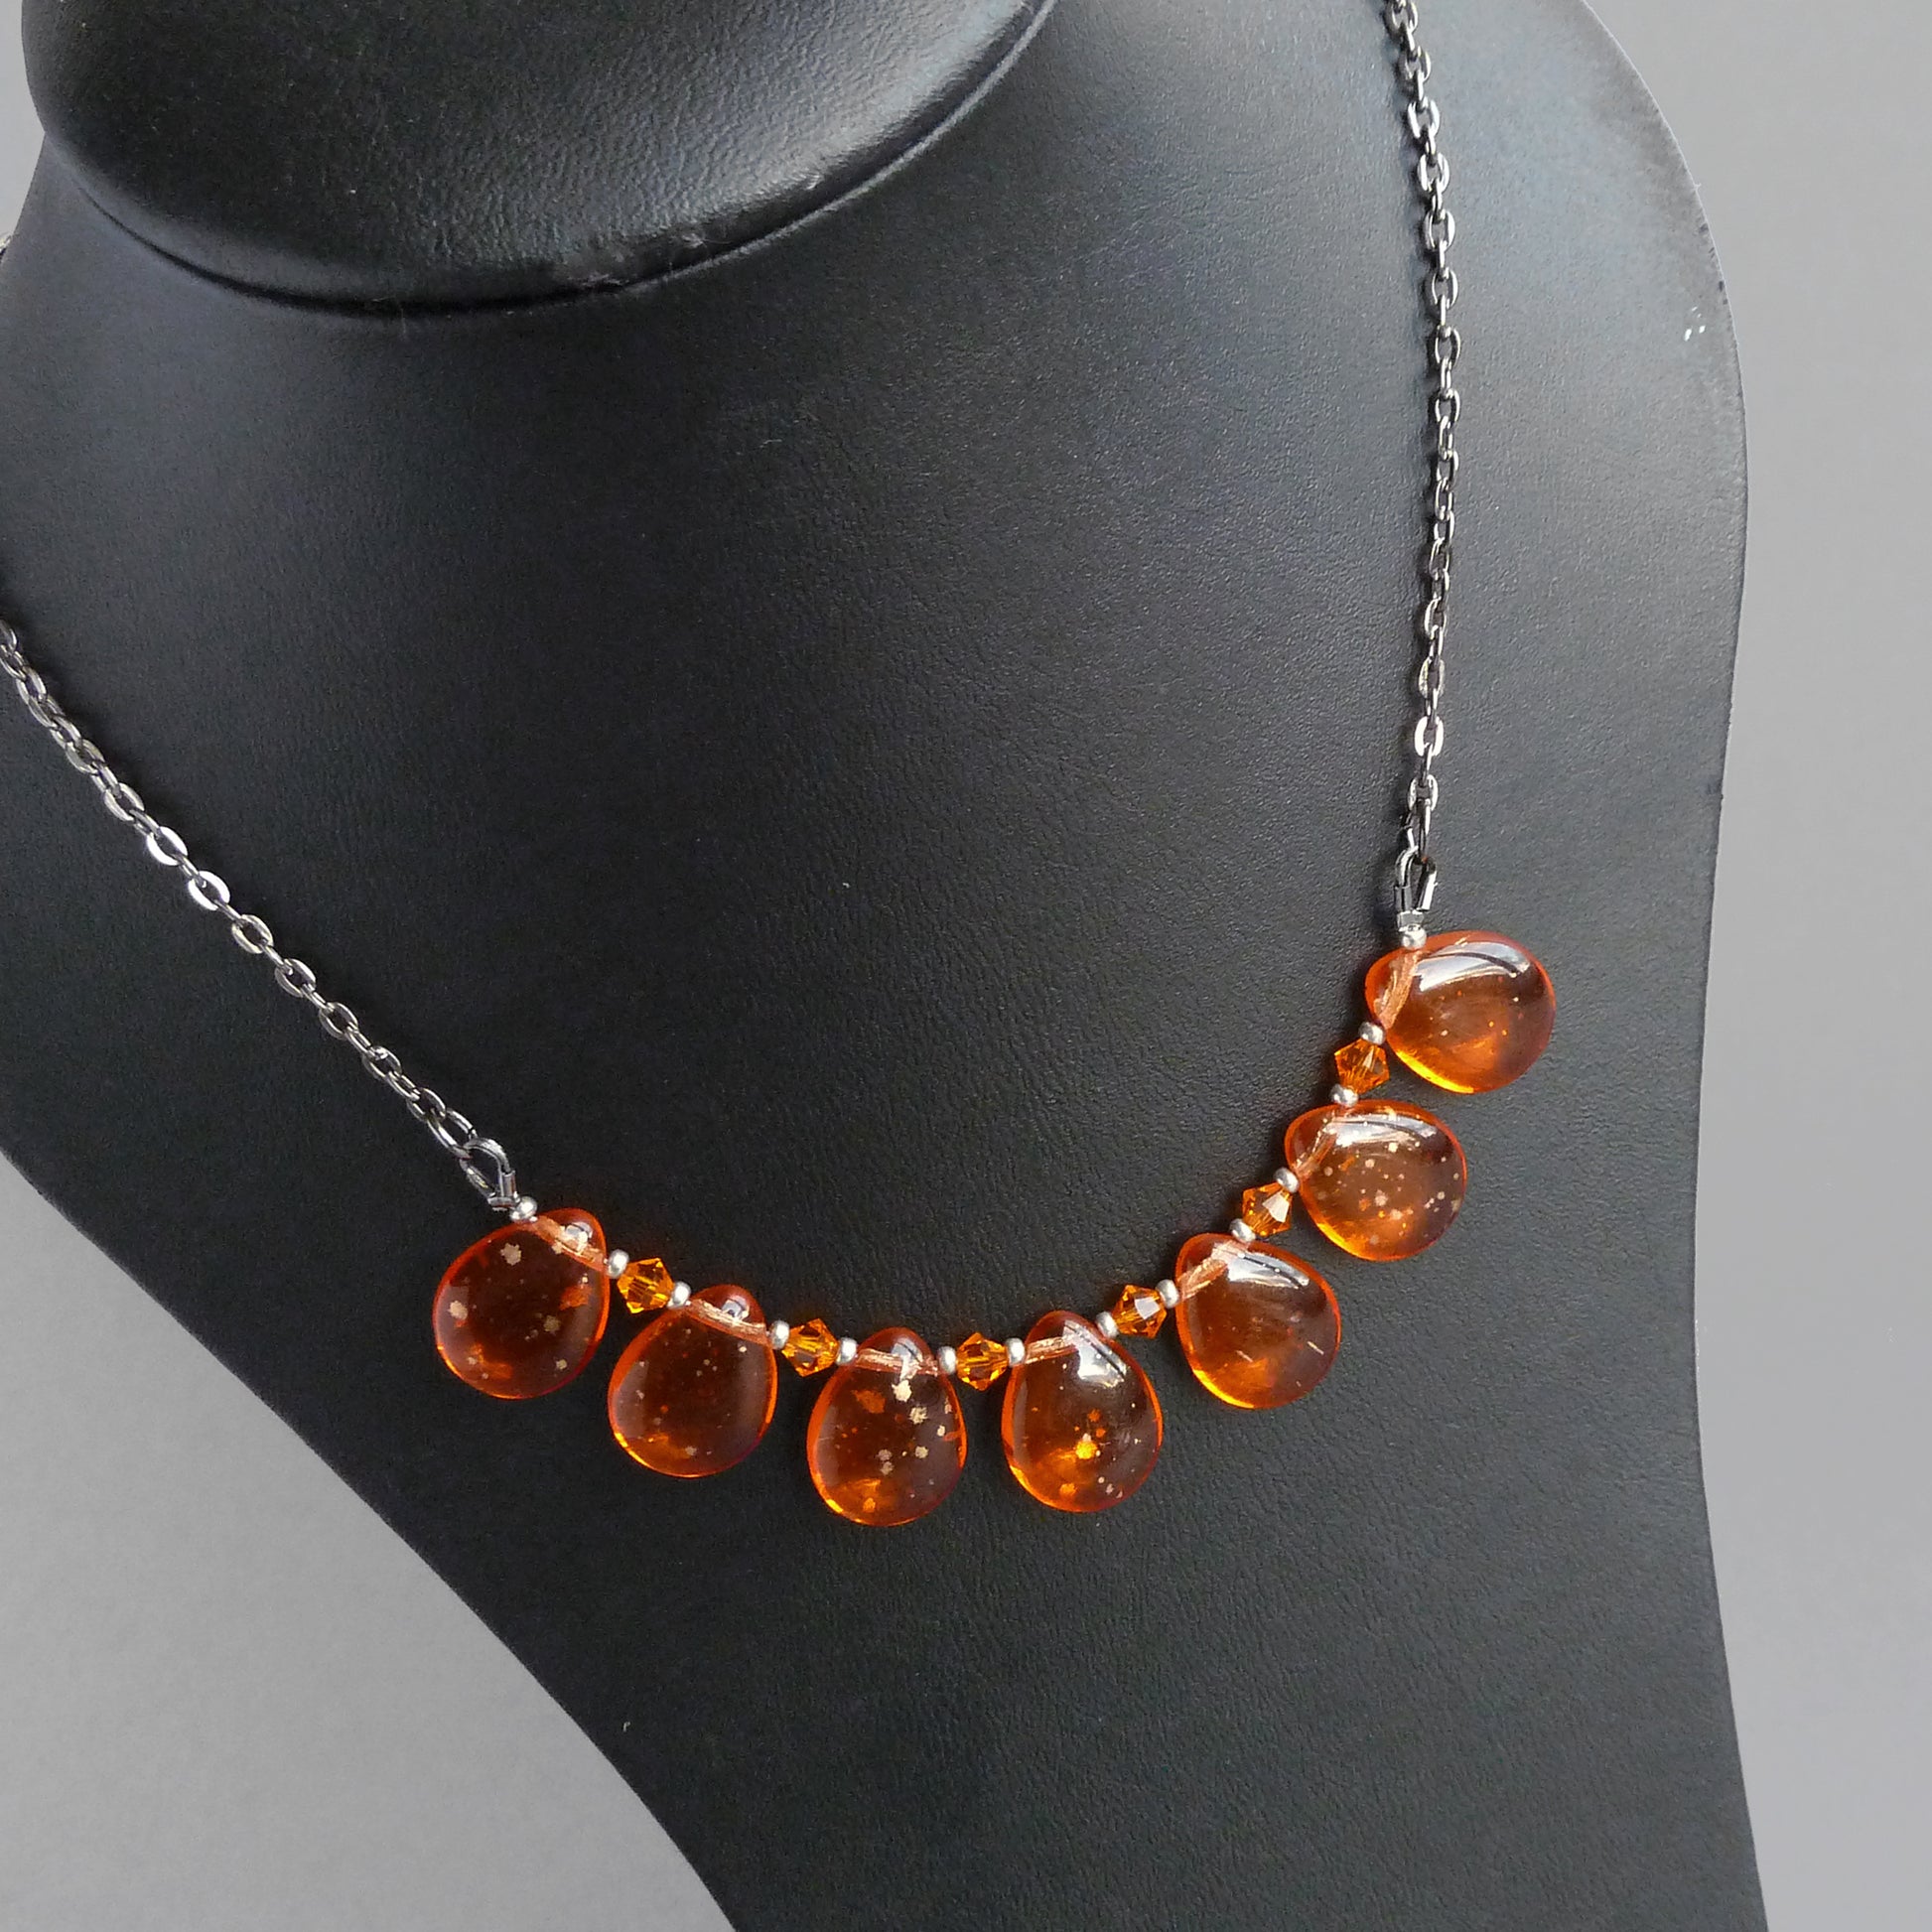 Bright orange statement necklace